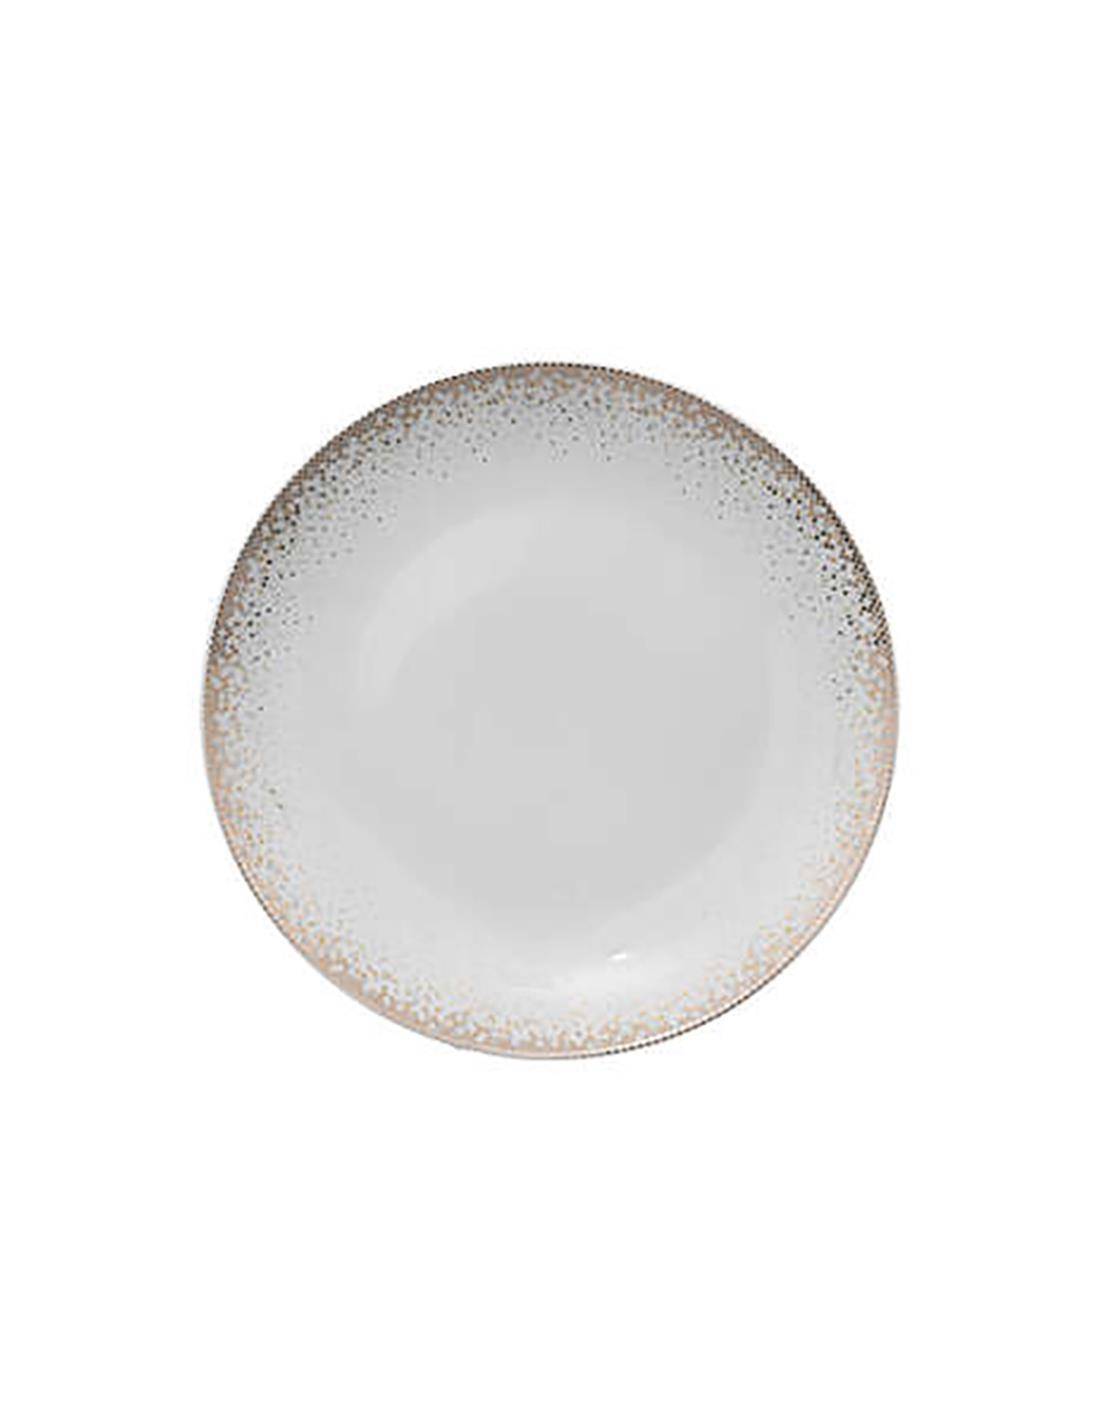 Πιάτο πορσελ.λευκό με dots επιδορπίου Φ19